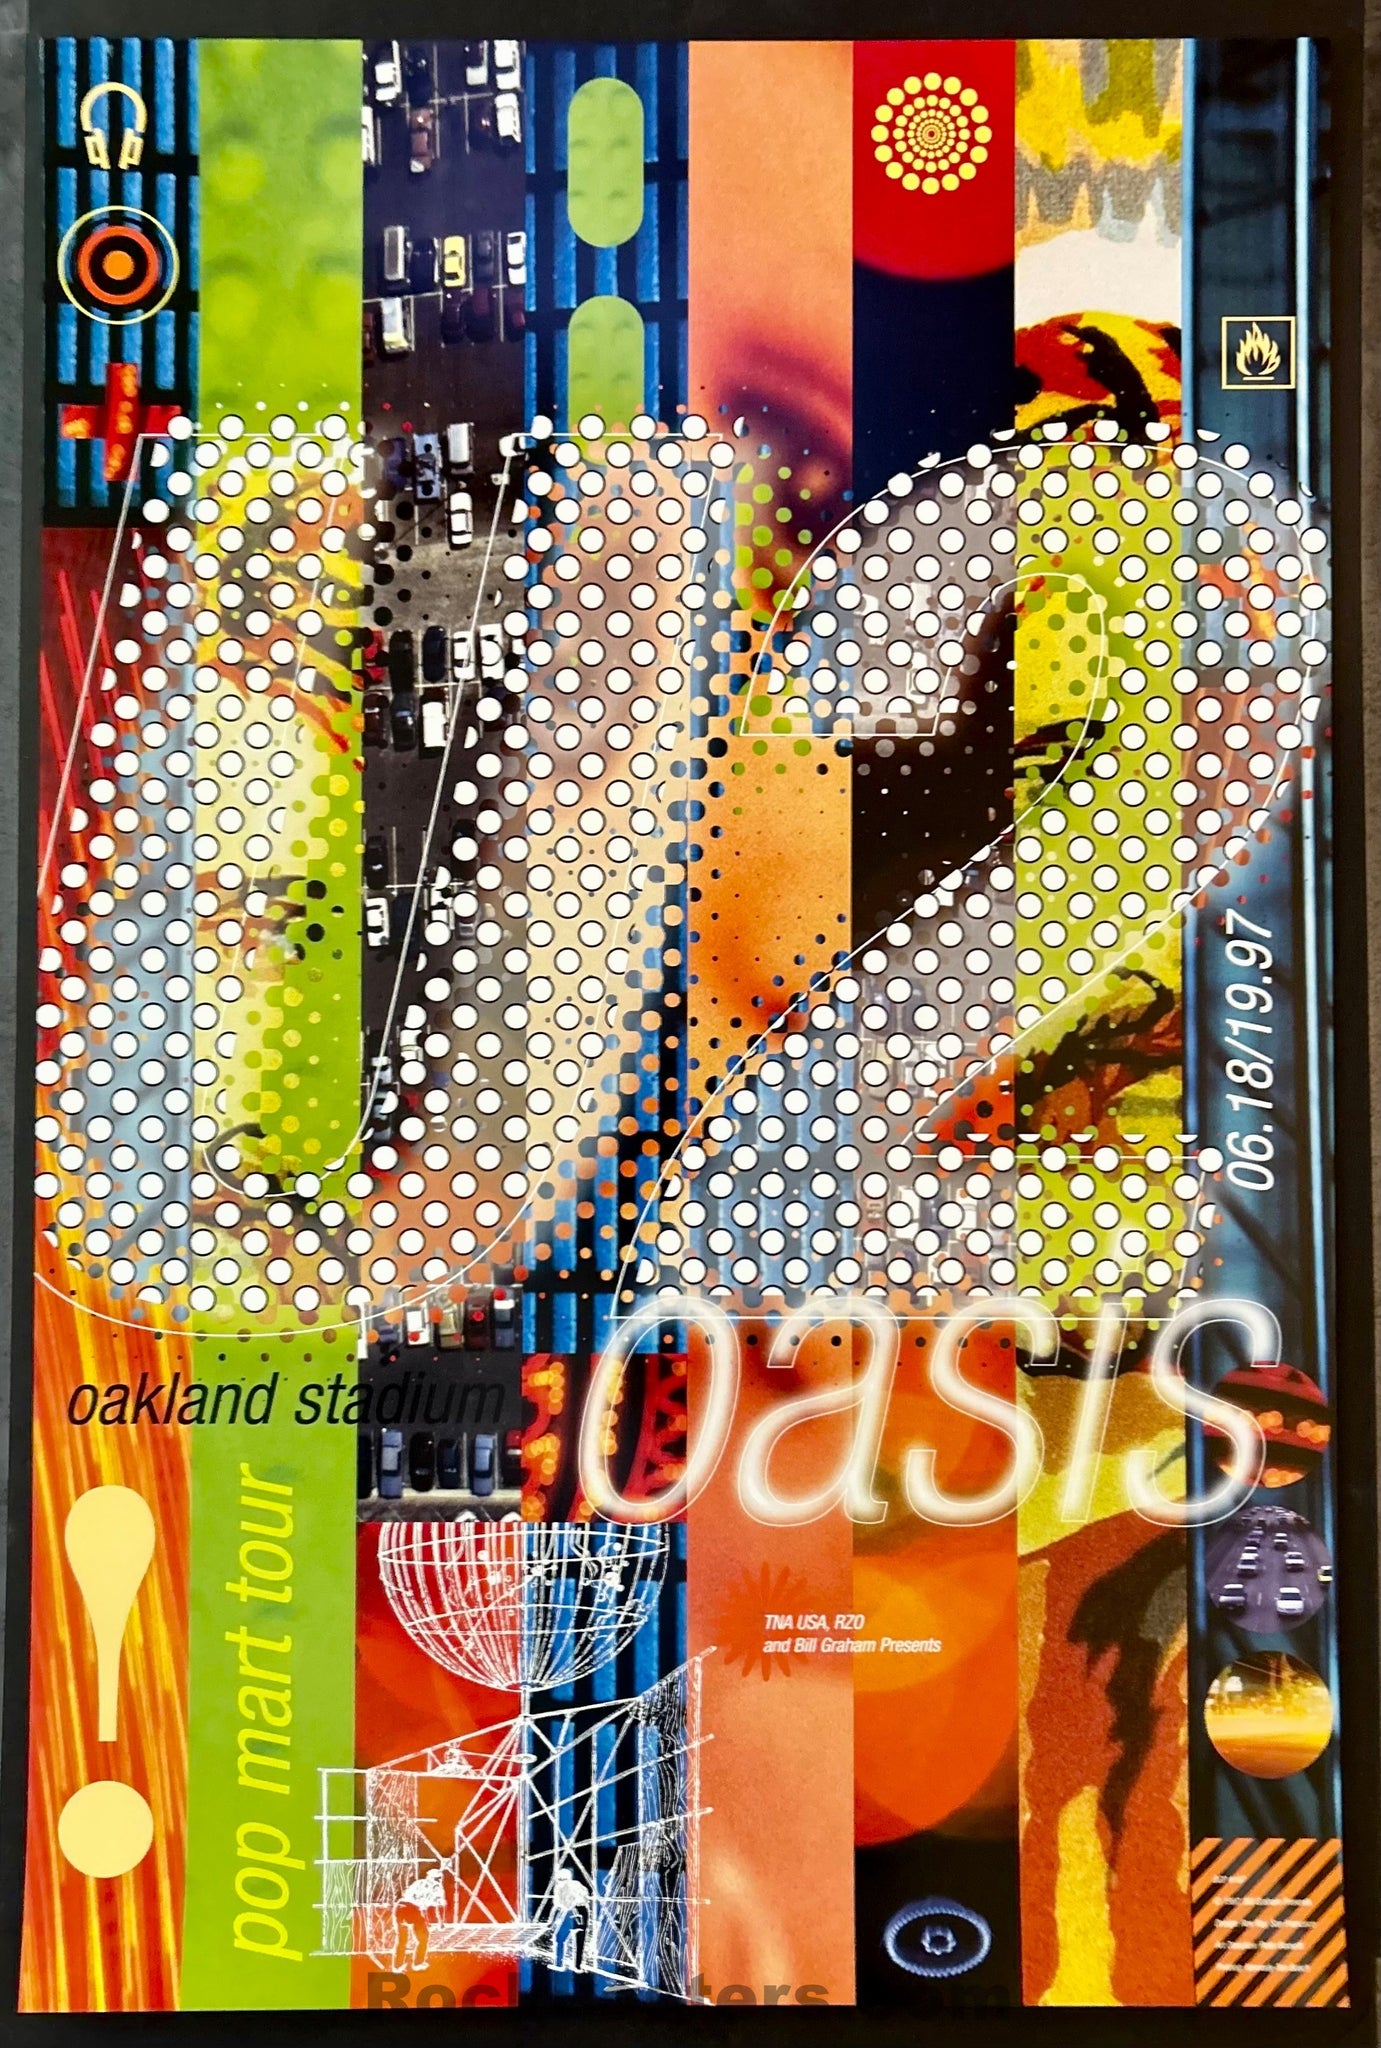 AUCTION - BGP-167 - U2/Oasis - Rex Ray - 1997 Poster - Oakland Coliseum - Mint